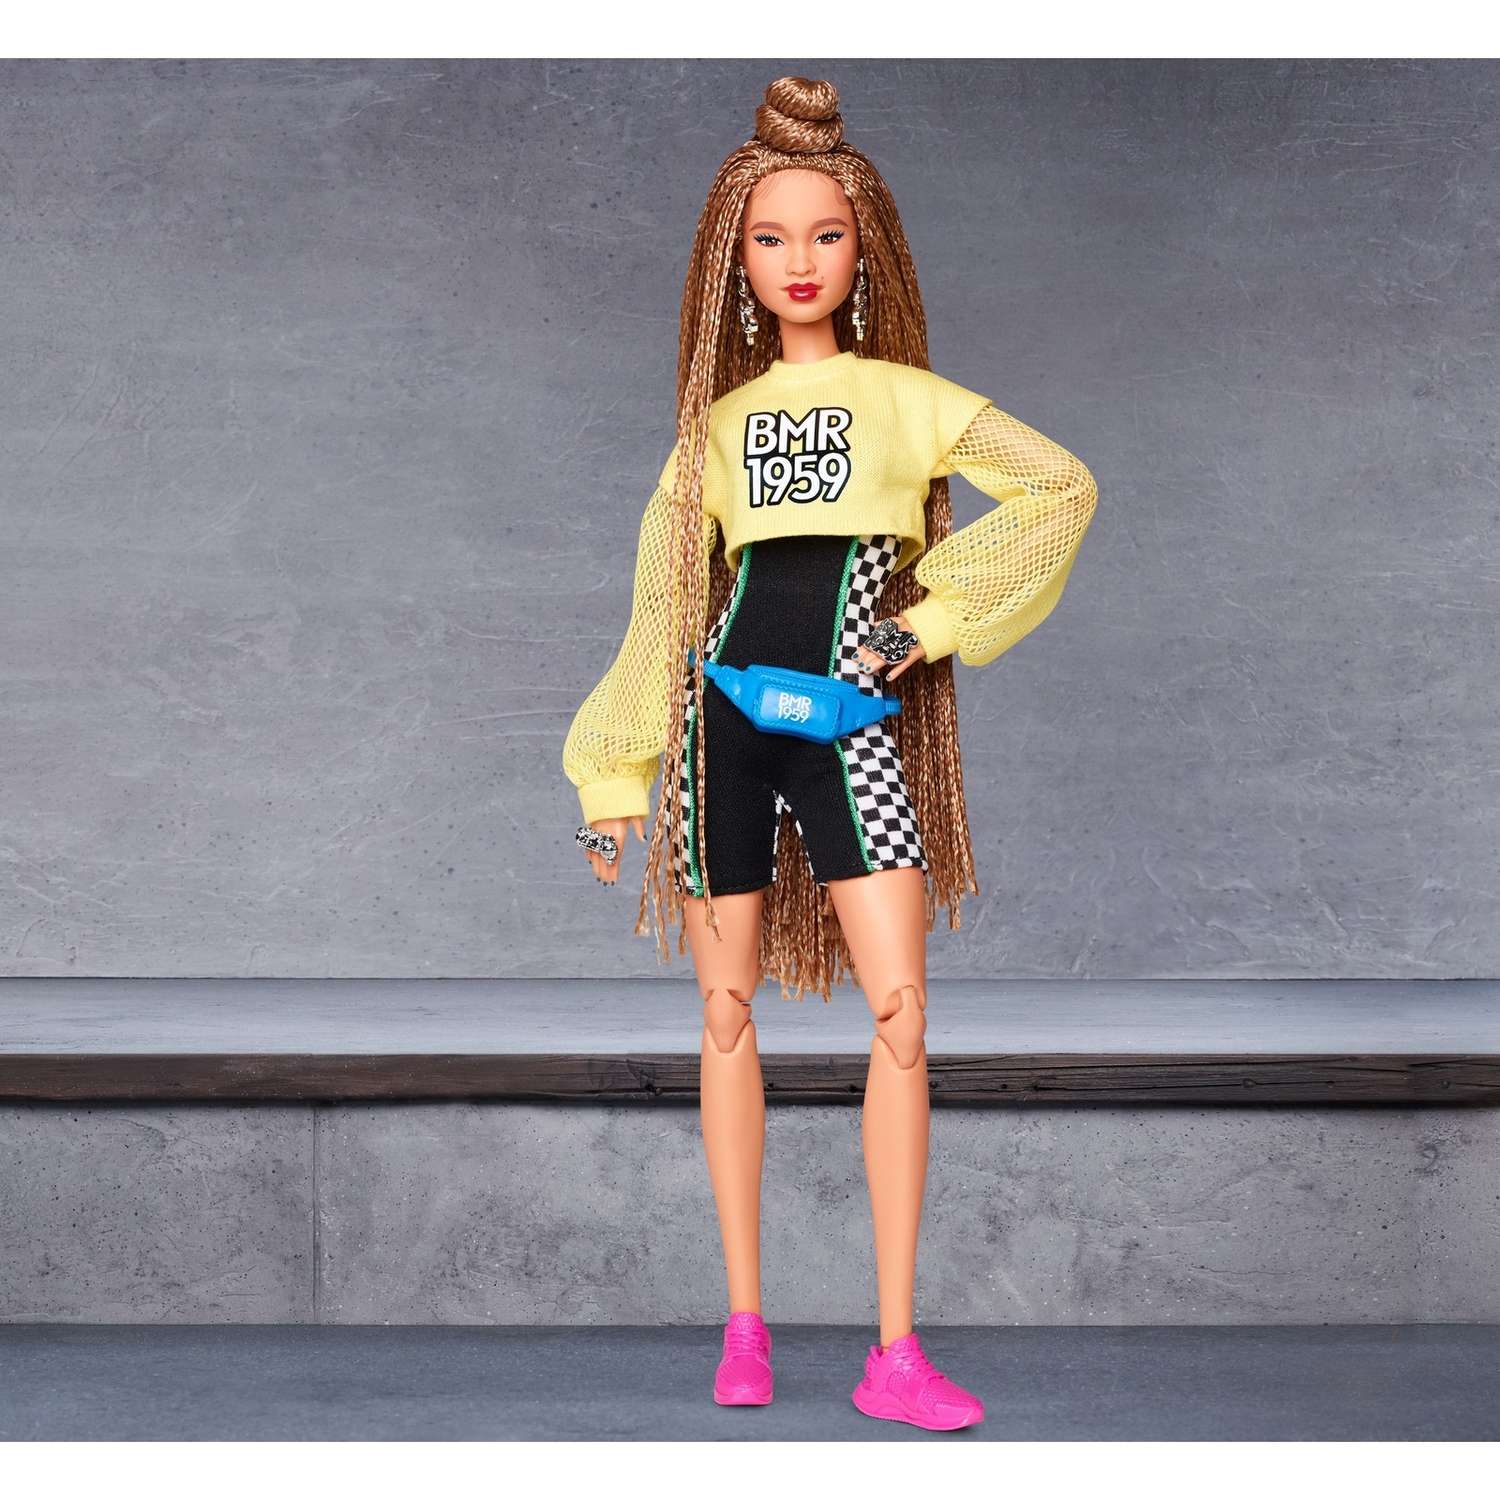 Кукла Barbie коллекционная BMR1959 GHT91 GHT91 - фото 15